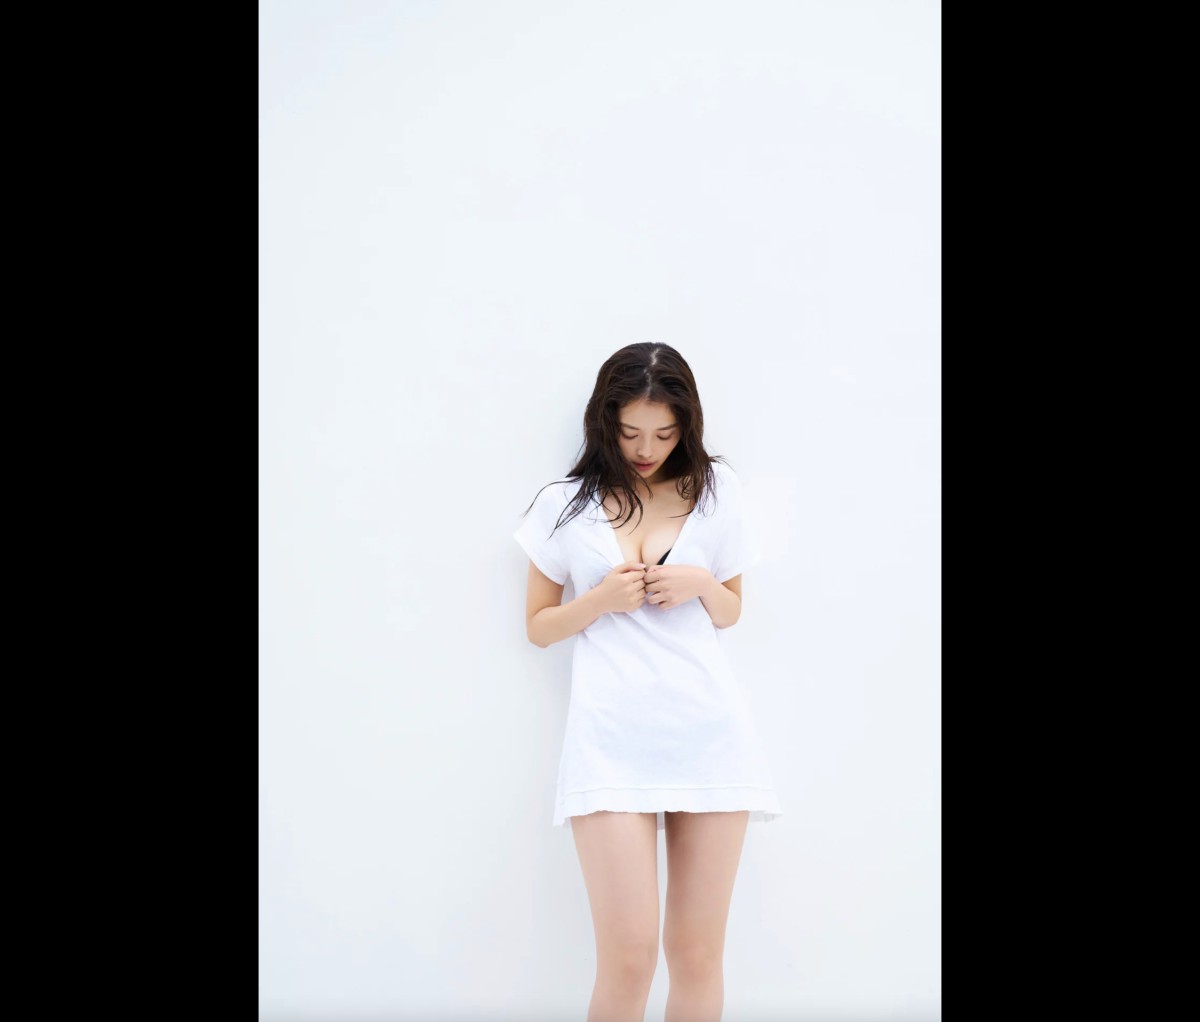 FRIDAYデジタル写真集 Hinami Mori 森日菜美 Seaside Girl Full Version 0005 6635348990.jpg